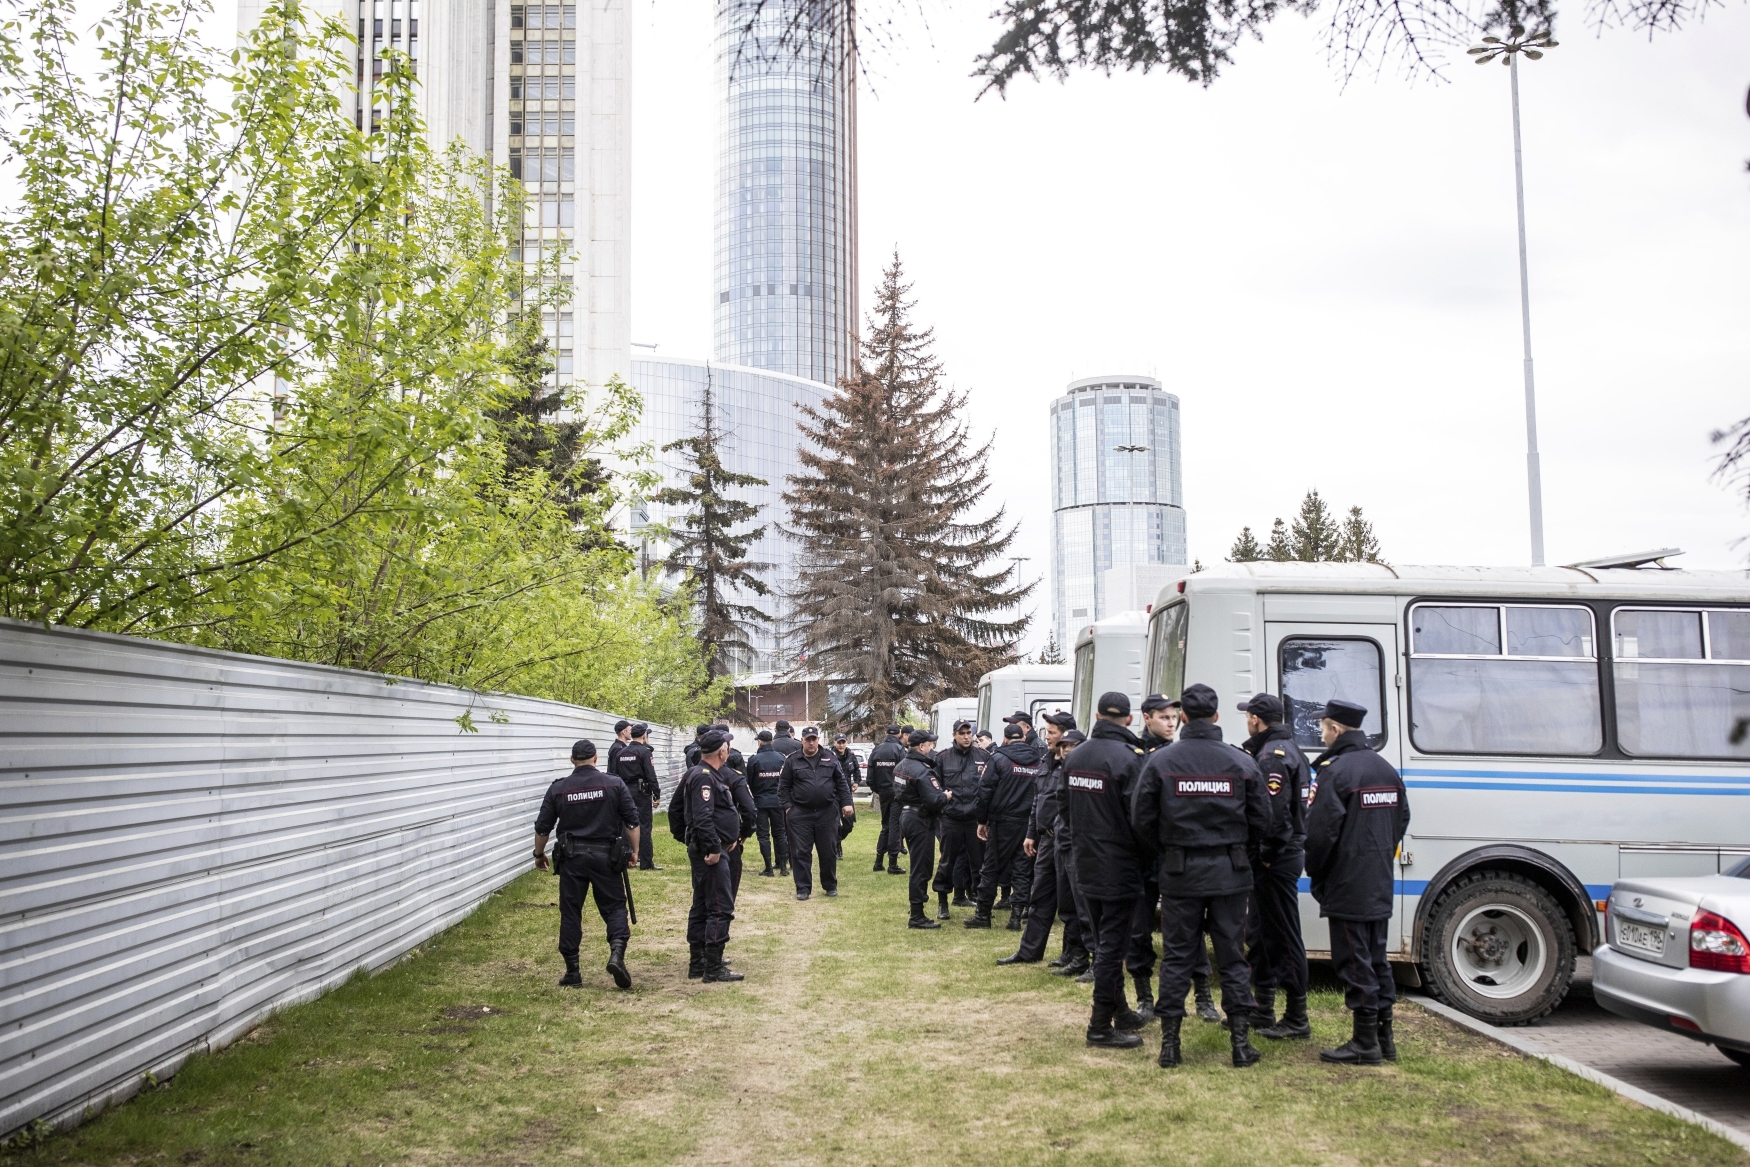 Policisté před plotem blokují demonstranty, kteří protestují proti plánům na výstavbu katedrály v parku v ruském Jekatěrinburgu